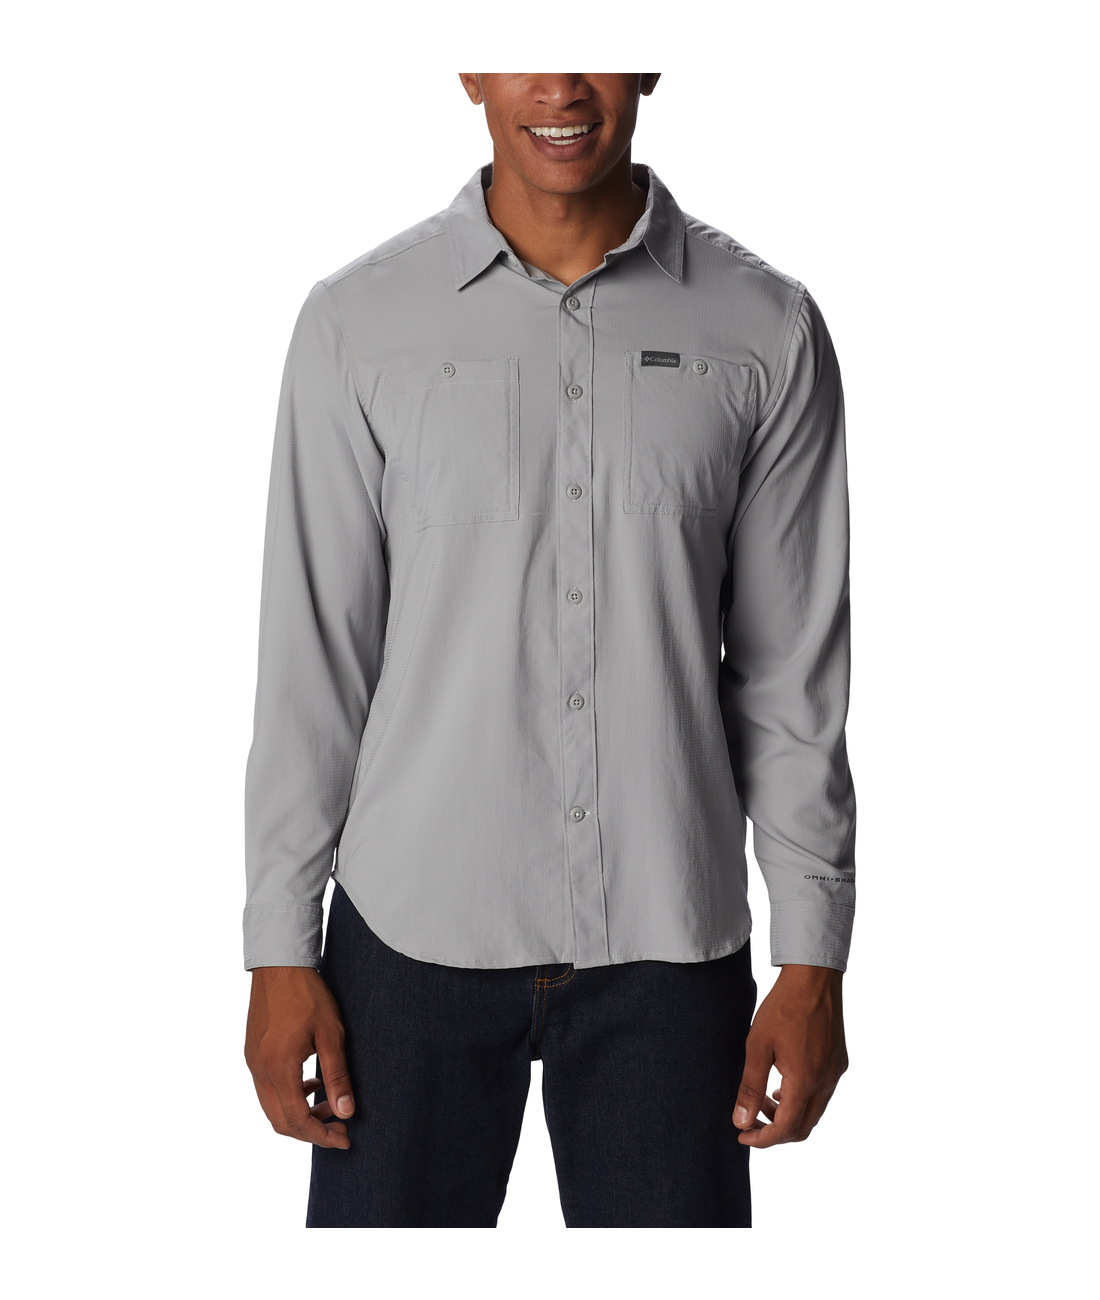 Utilizer Woven Long Sleeve Shirt